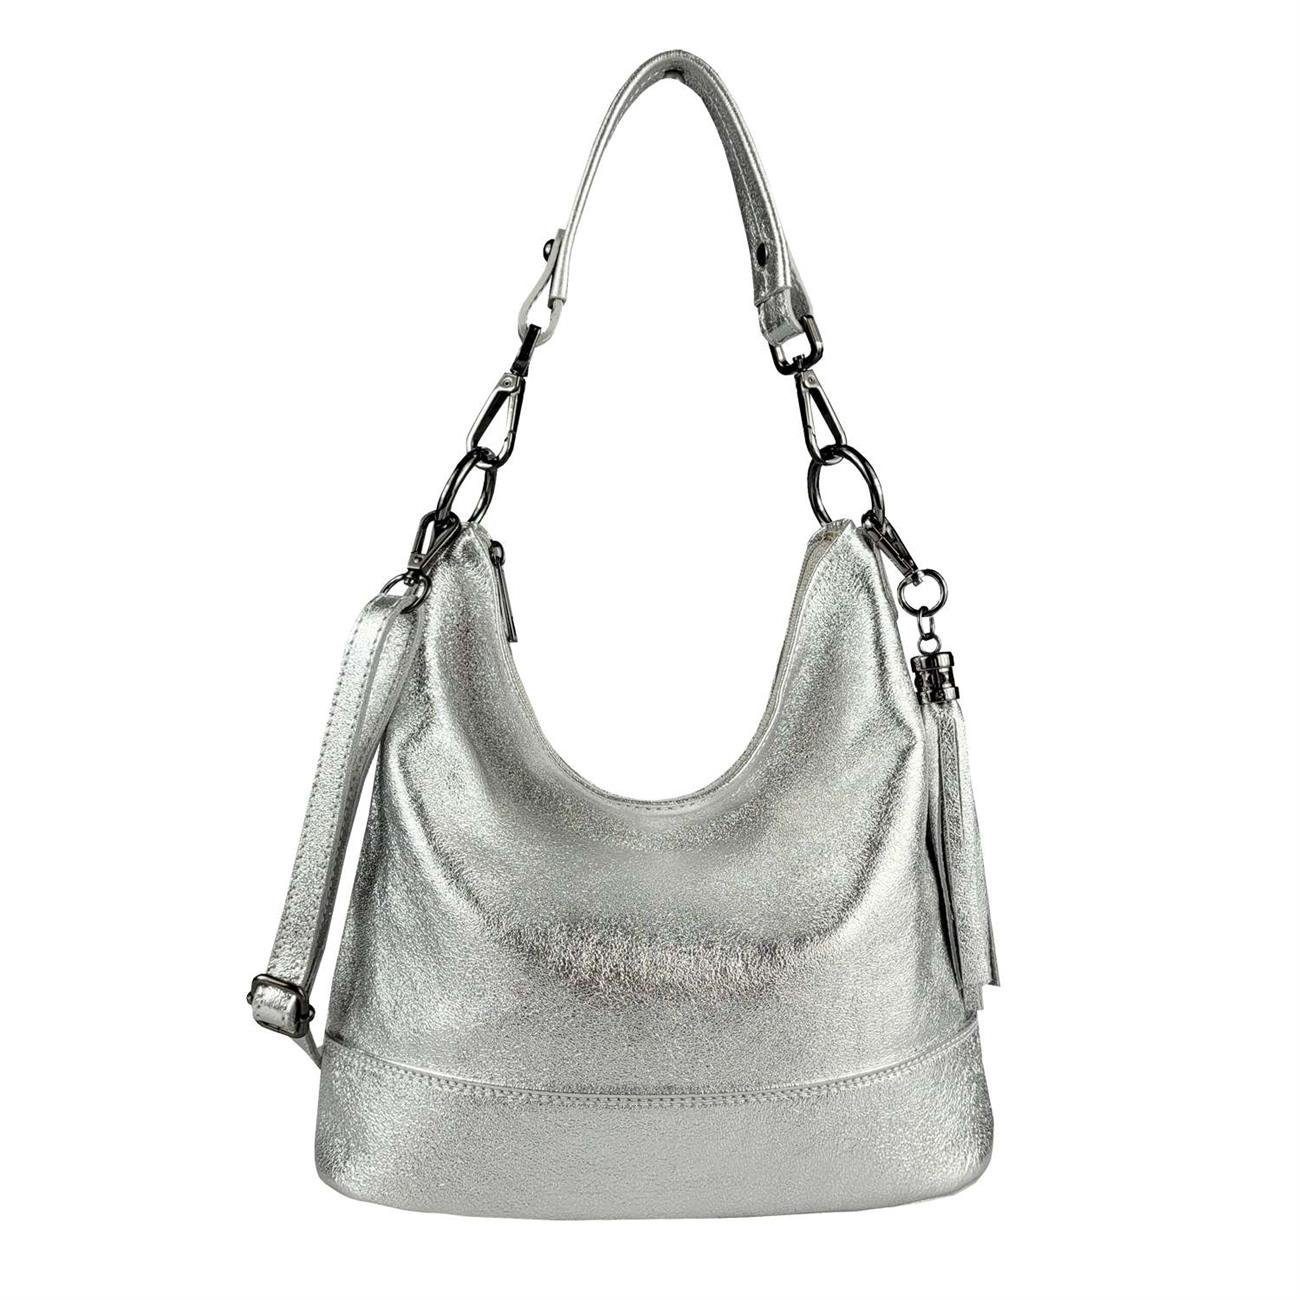 ITALYSHOP24 Schultertasche Made in Italy Damen Leder Tasche Shopper, als Handtasche, CrossOver, Umhängetasche tragbar Silber